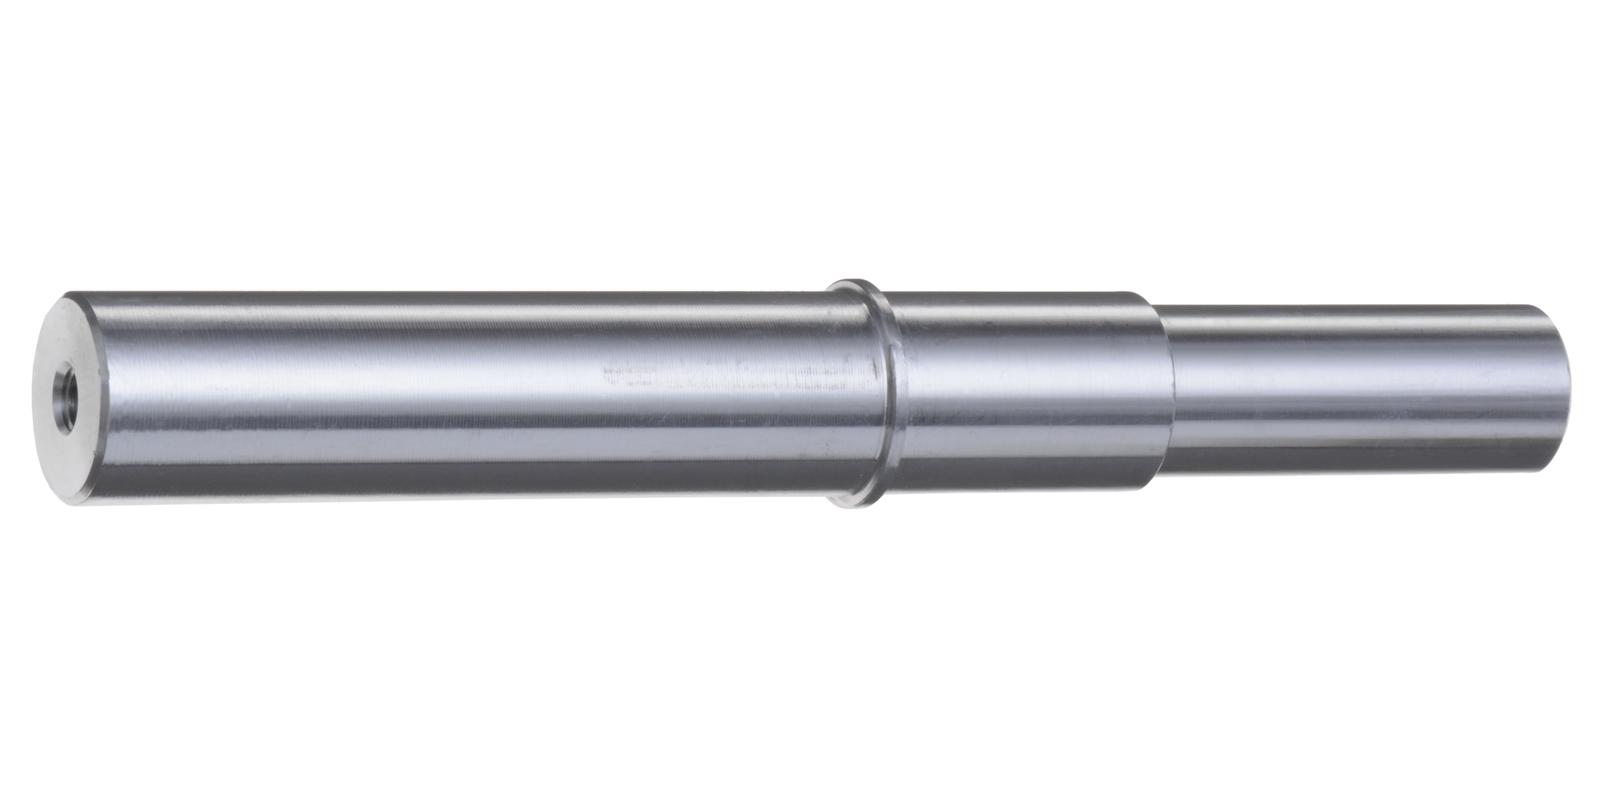 Obrázek produktu trn pro M002-85 průměr 25,5 mm DUCATI JL-M05017 PIN 25,5